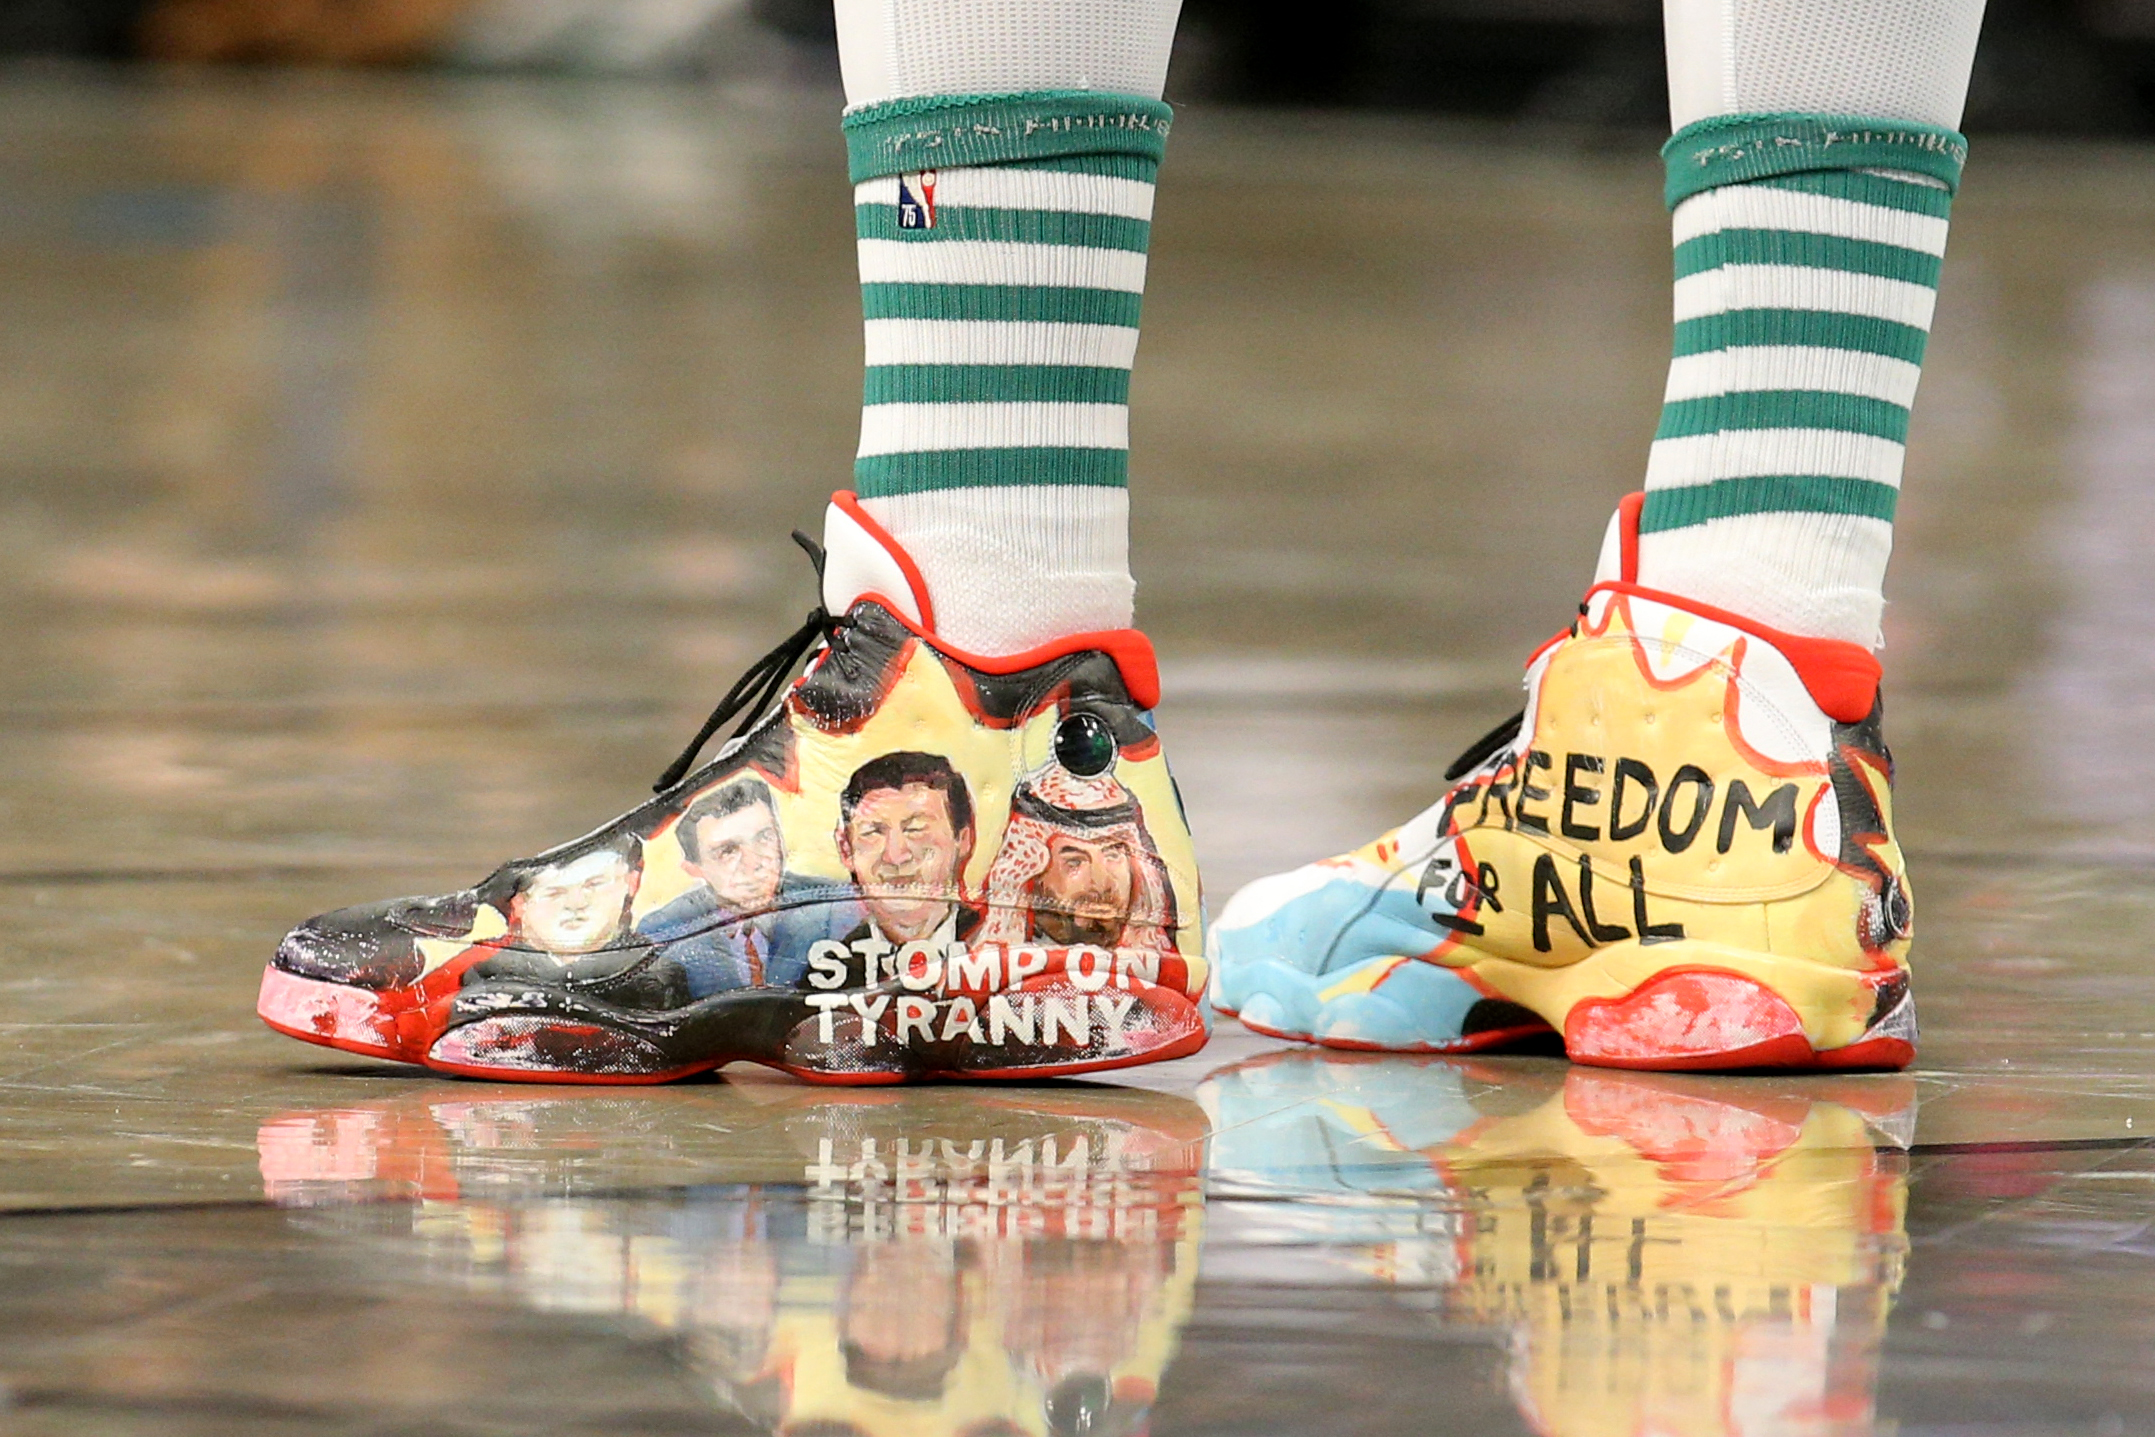 Zapatillas usadas por Enes Freedom que hablan de la tiranía en Turquía 